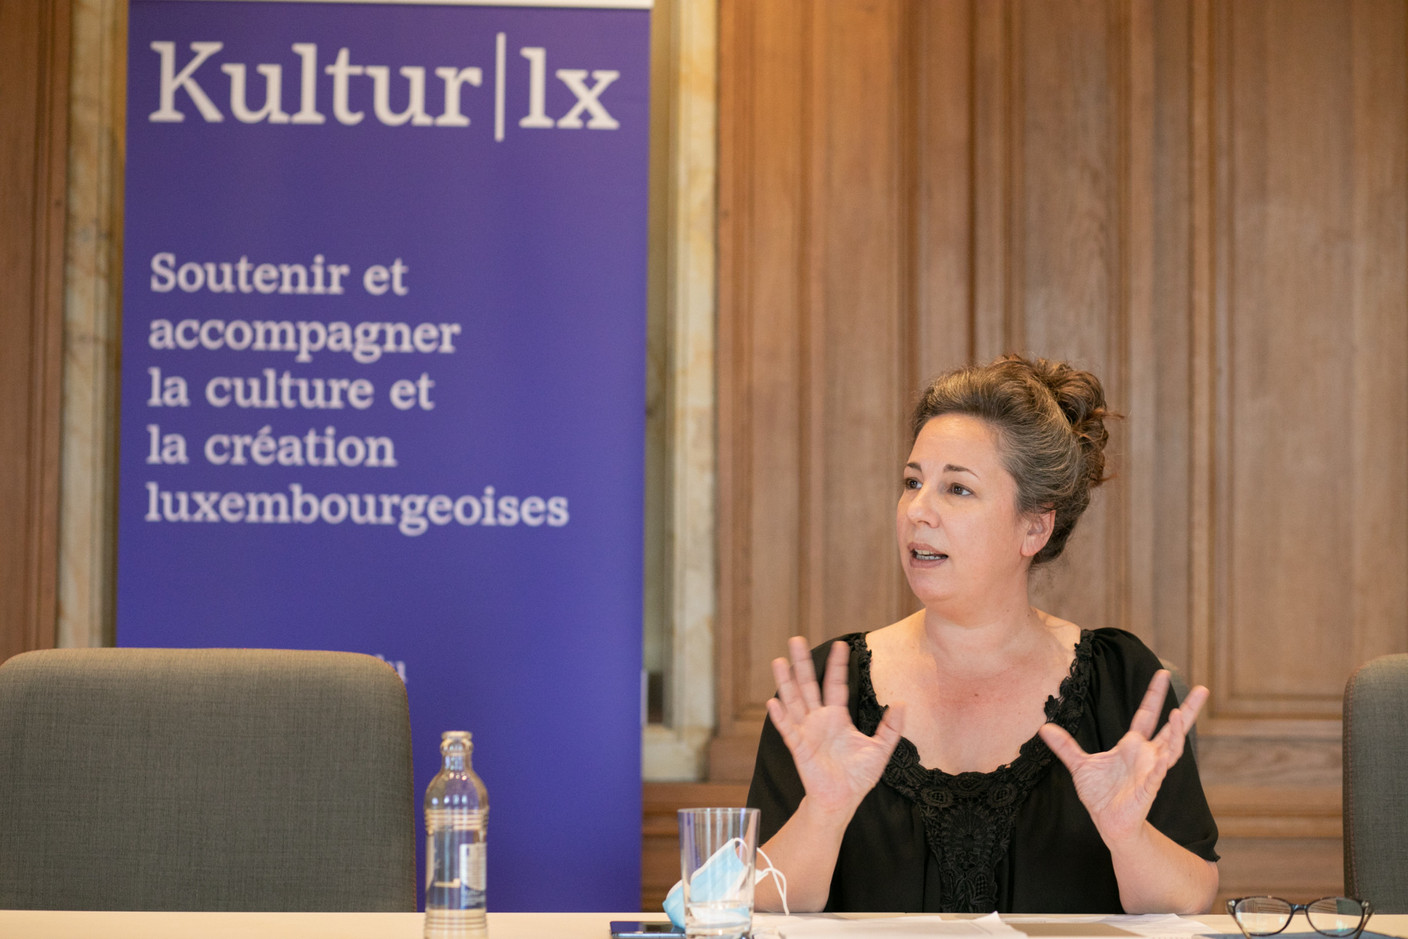 Valérie Quilez est en charge de la coordination et promotion internationale de l’asbl Kultur lx. (Photo: Matic Zorman/Maison Moderne)